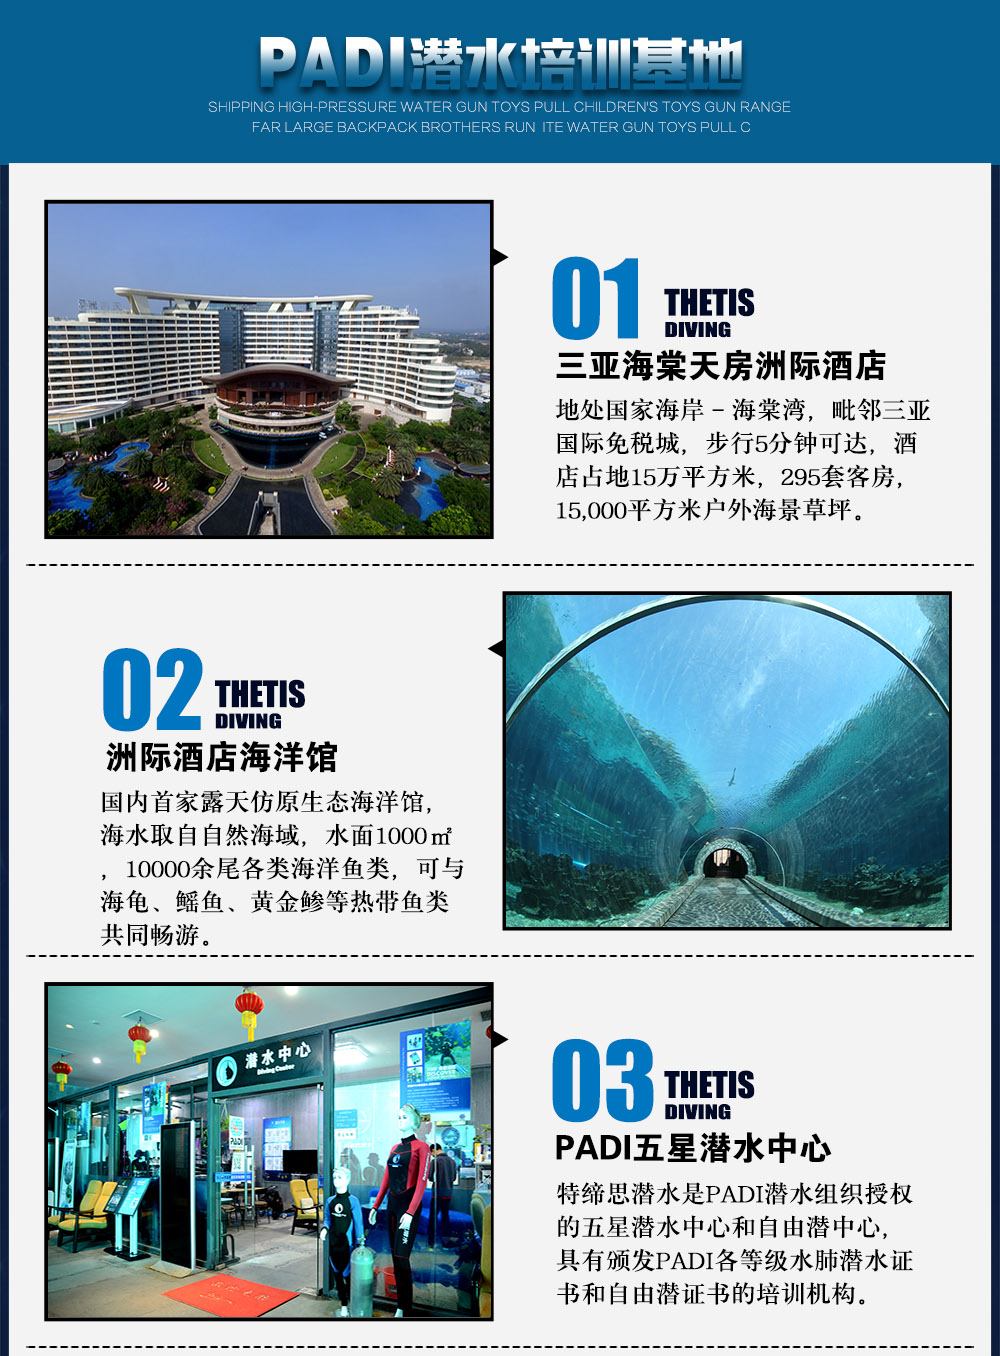 三亚洲际酒店PADI DSD体验潜水